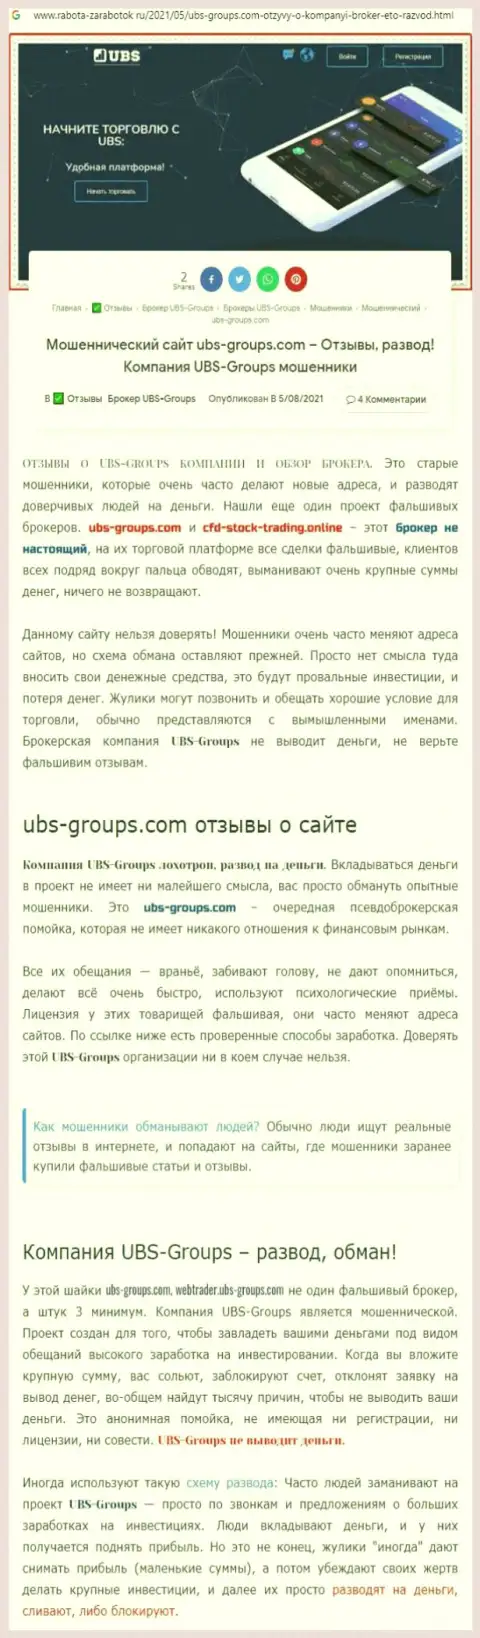 Подробный анализ моделей надувательства UBS-Groups Com (обзор)